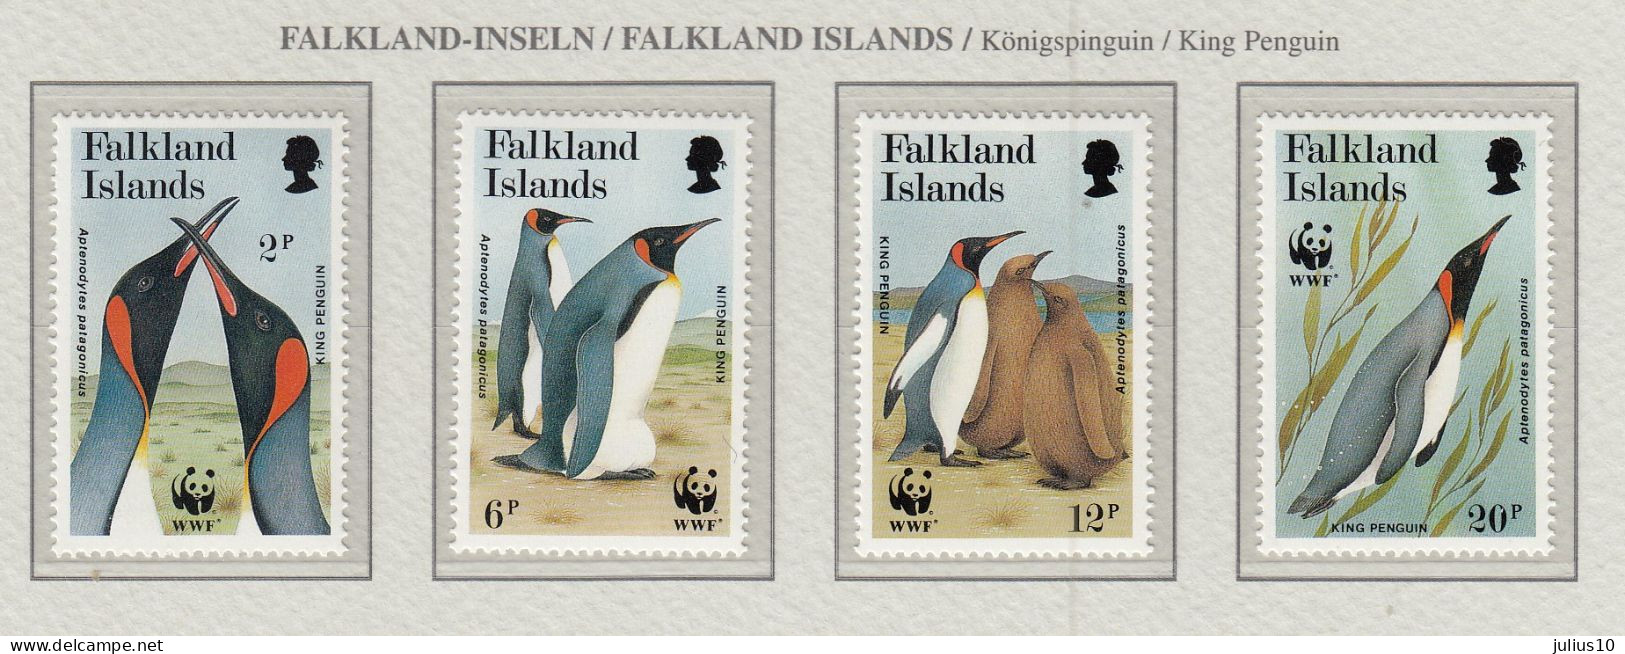 FALKLAND ISLANDS 1991 WWF Birds Penguins Mi 538-541 MNH(**) Fauna 799 - Pinguine